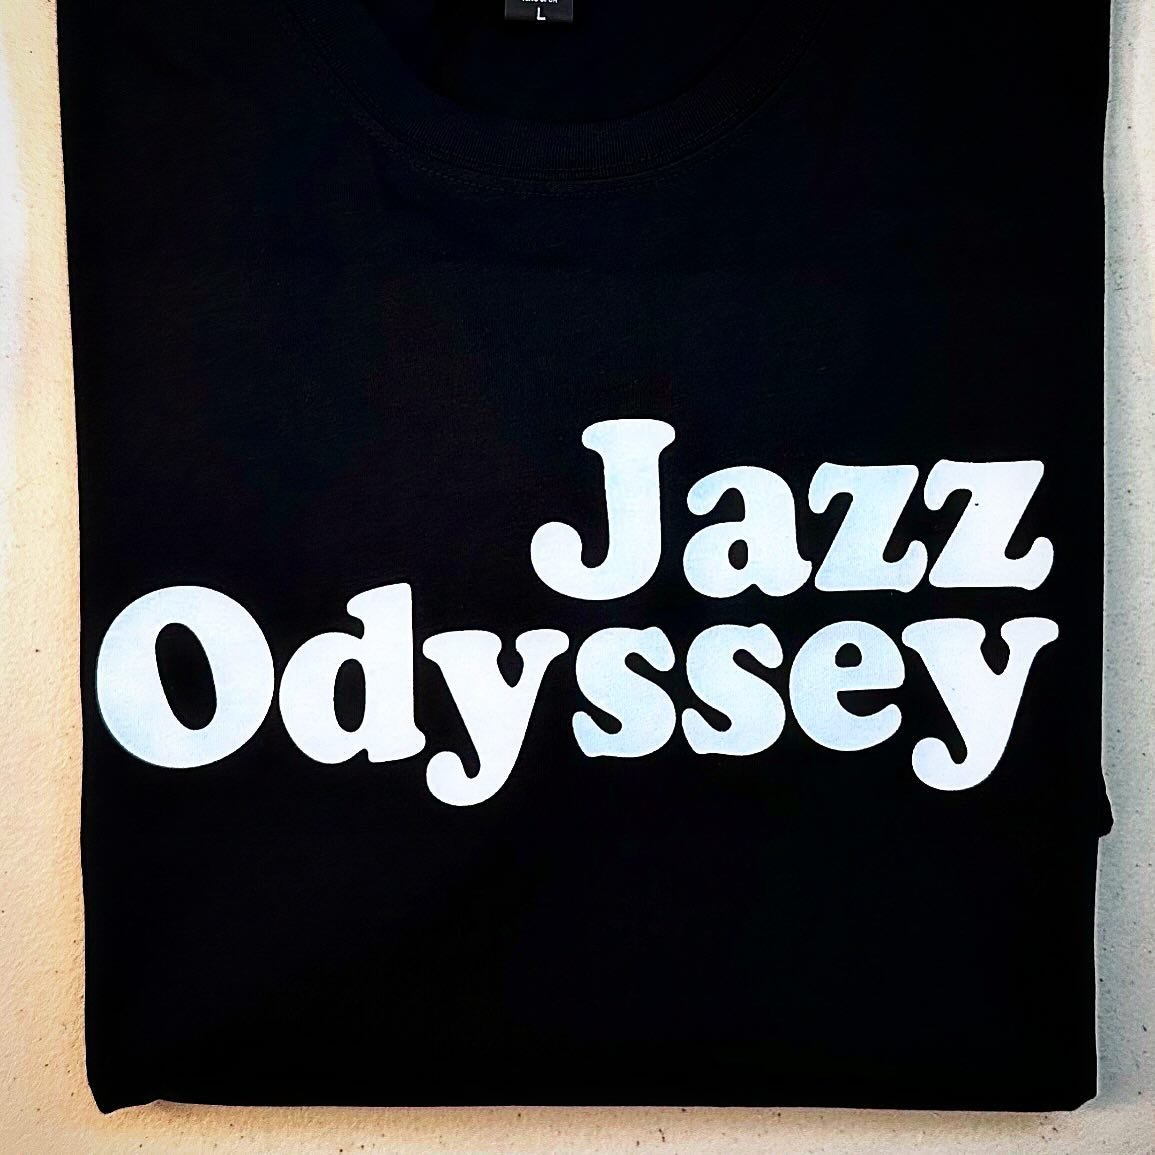 Jazz Odyssey 
Black Short Sleeve Tee 
.
&ldquo;Derek Smalls on Bass &hellip; he wrote this!&rdquo;
.
#spinaltap #dereksmalls #rockandroll #tshirt #tshirtprinting #tshirtdesign #dtg #jazz #jazzodyssey
.
Shop link in bio